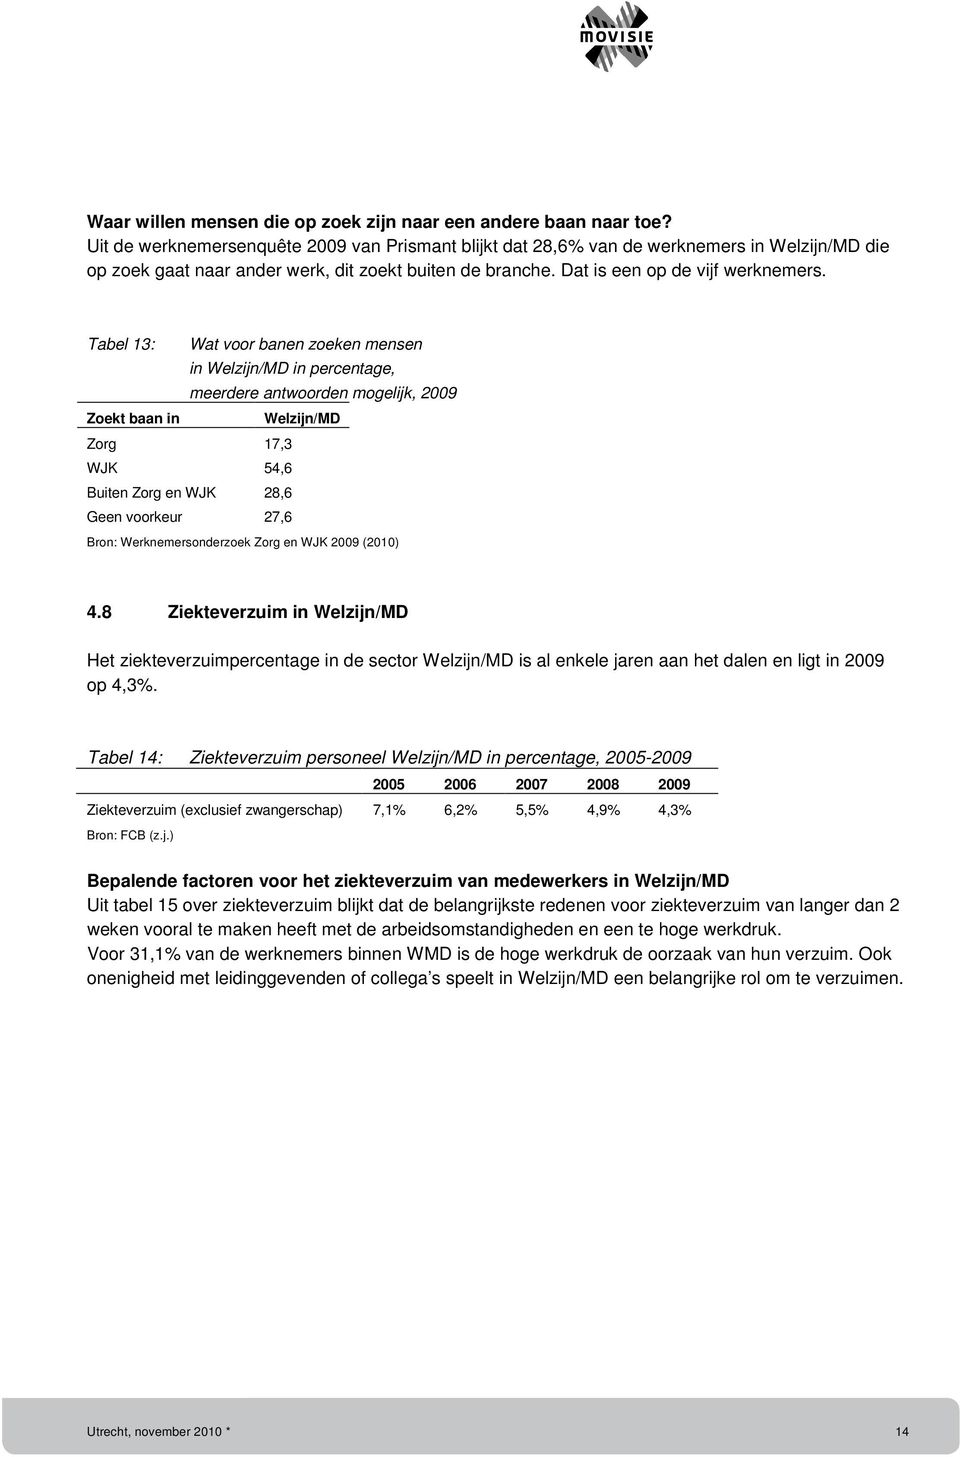 Tabel 13: Wat voor banen zoeken mensen in Welzijn/MD in percentage, meerdere antwoorden mogelijk, 2009 Zoekt baan in Welzijn/MD Zorg 17,3 WJK 54,6 Buiten Zorg en WJK 28,6 Geen voorkeur 27,6 4.